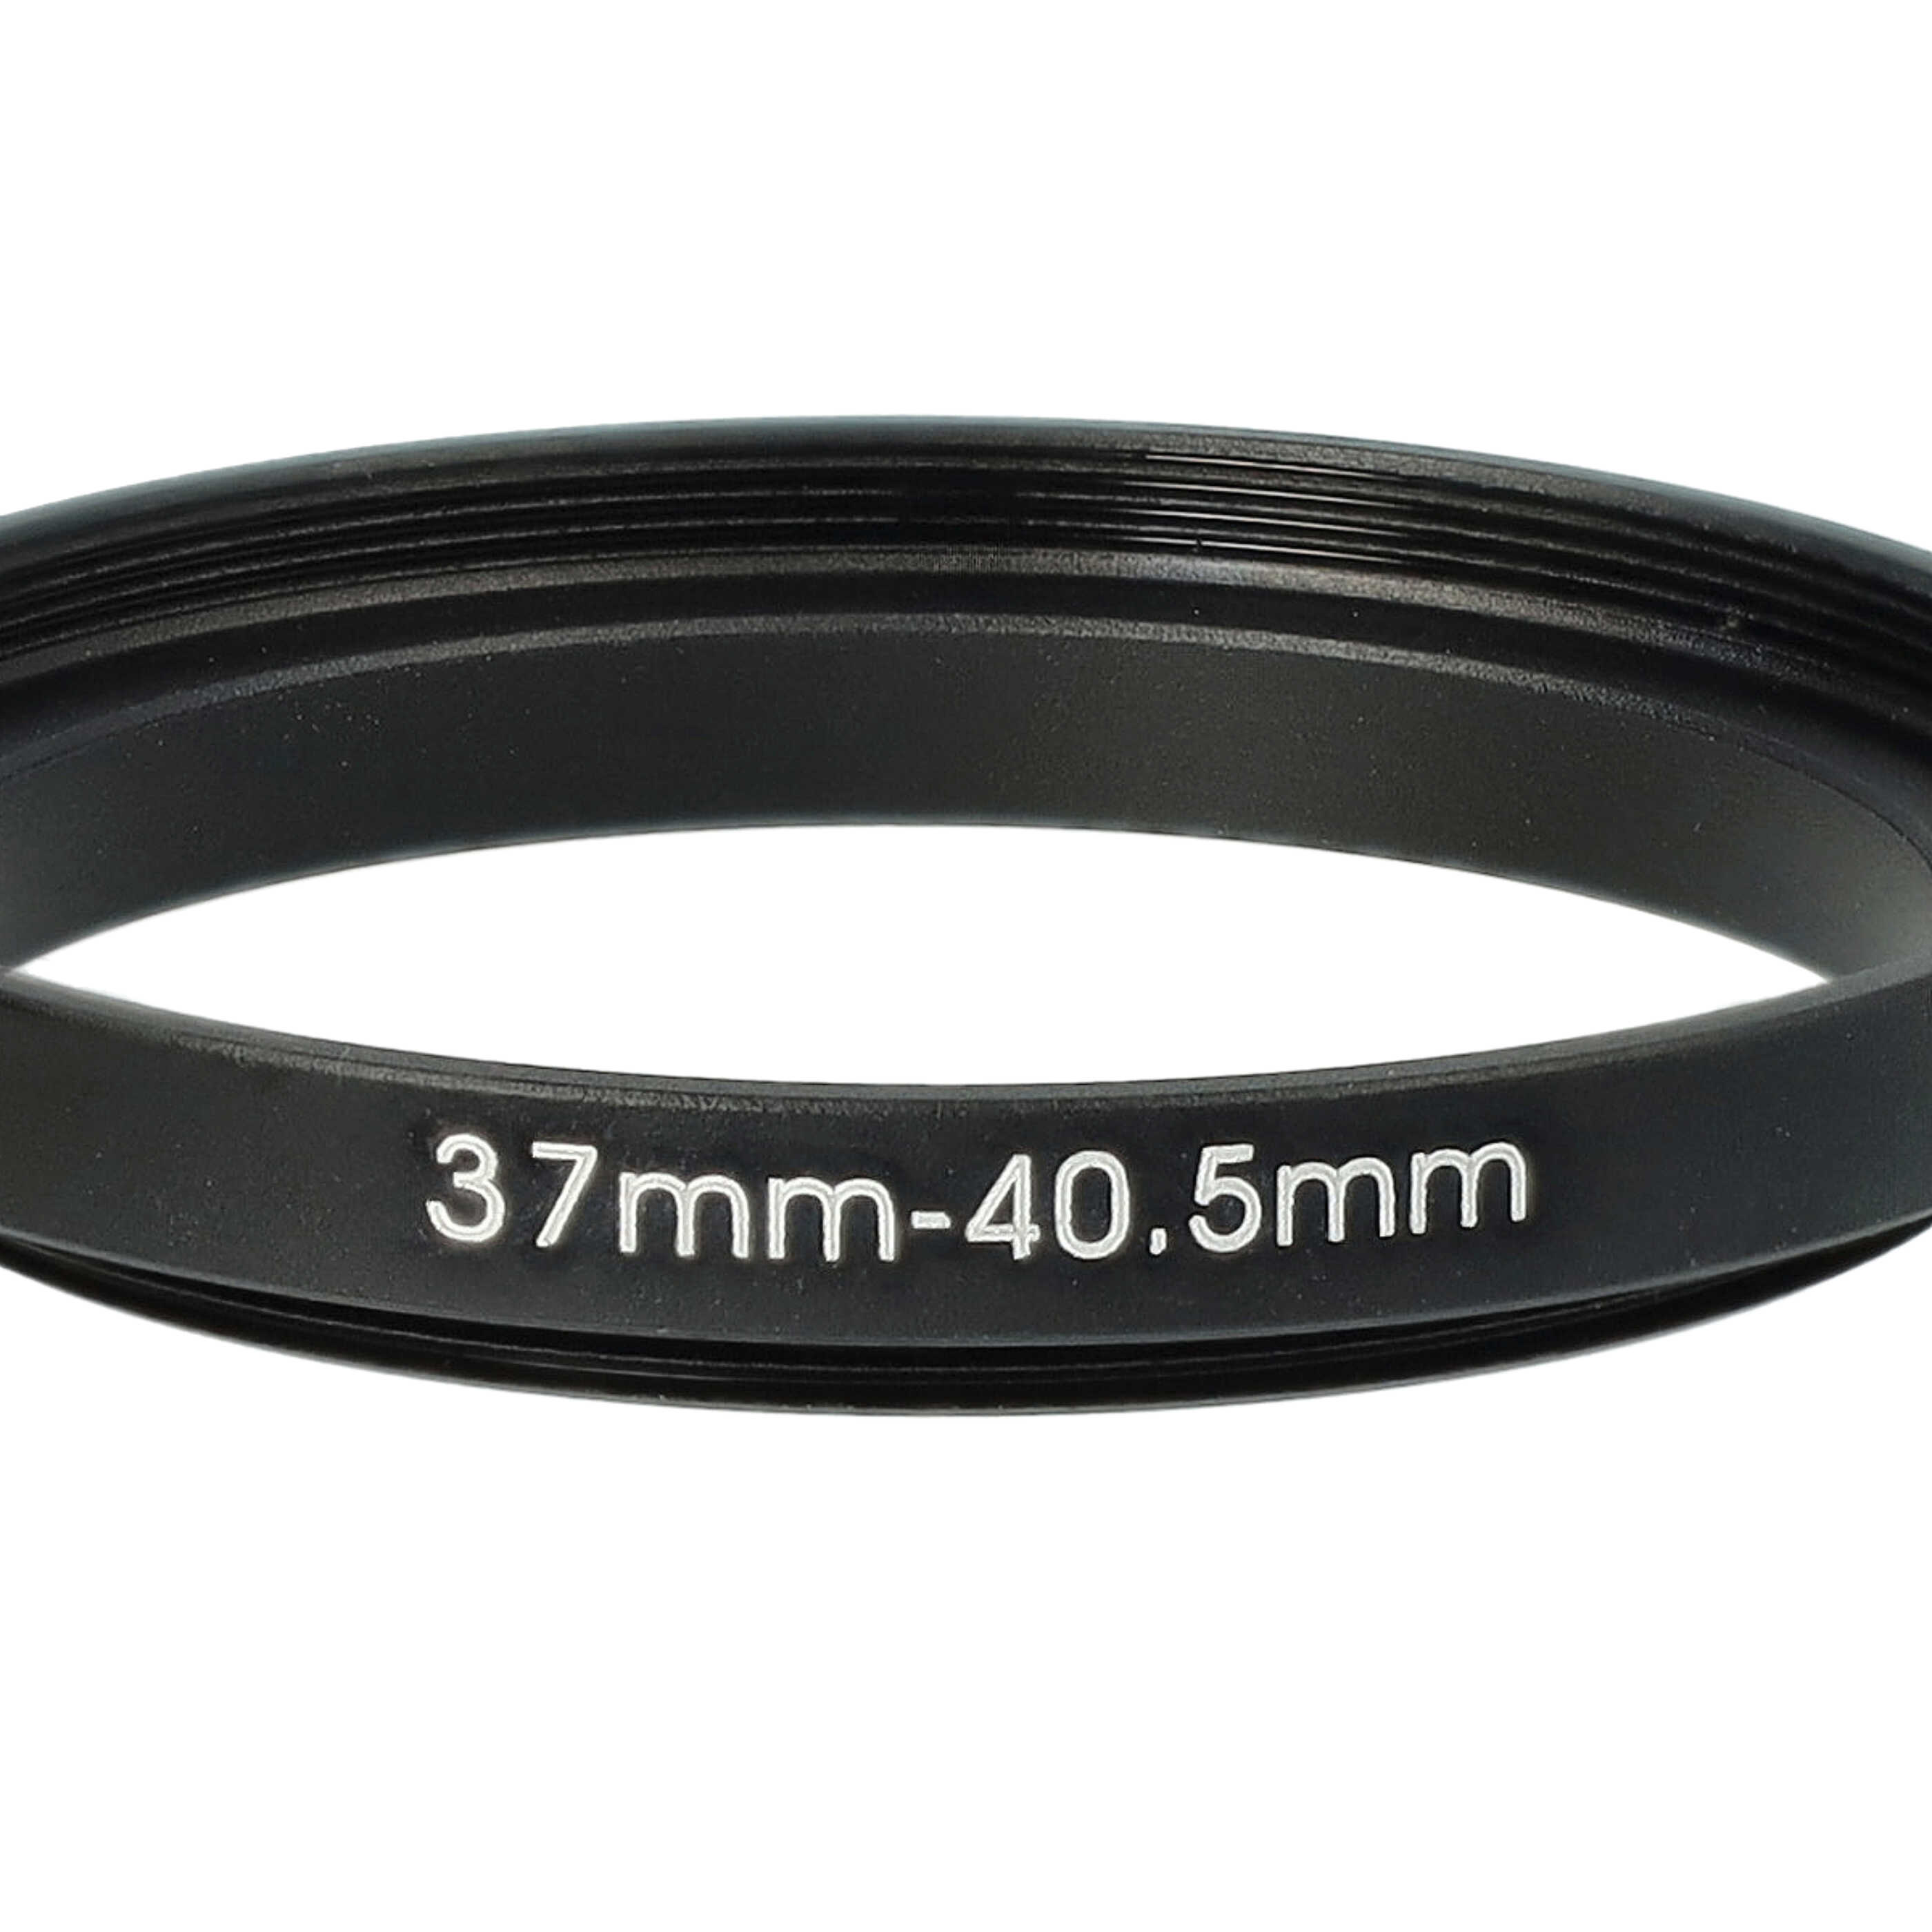 Step-Up-Ring Adapter 37 mm auf 40,5 mm passend für diverse Kamera-Objektive - Filteradapter